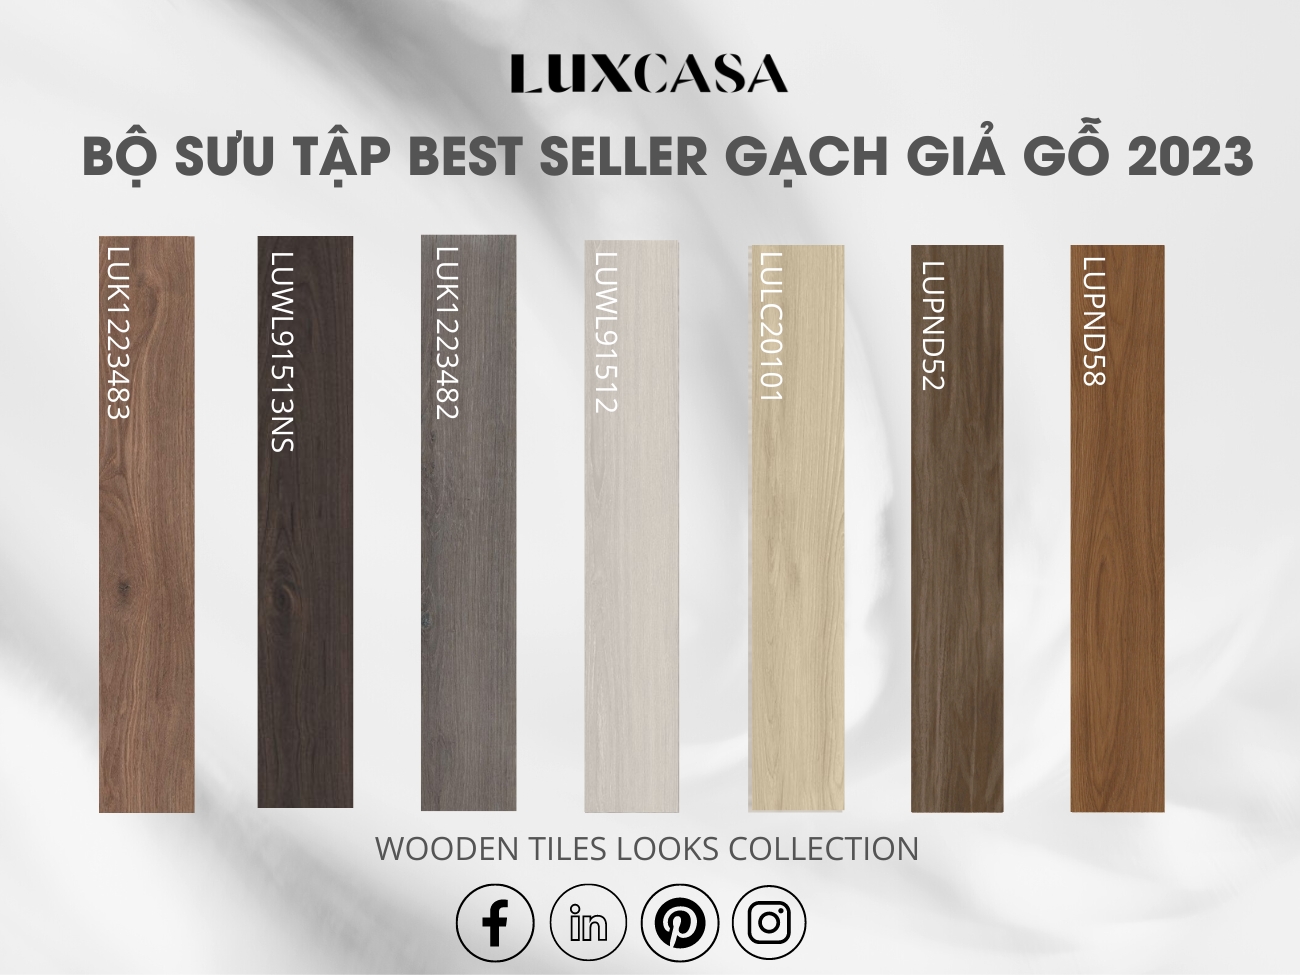 bst gạch vân gỗ dạng thanh nhập khẩu tại Luxcasa